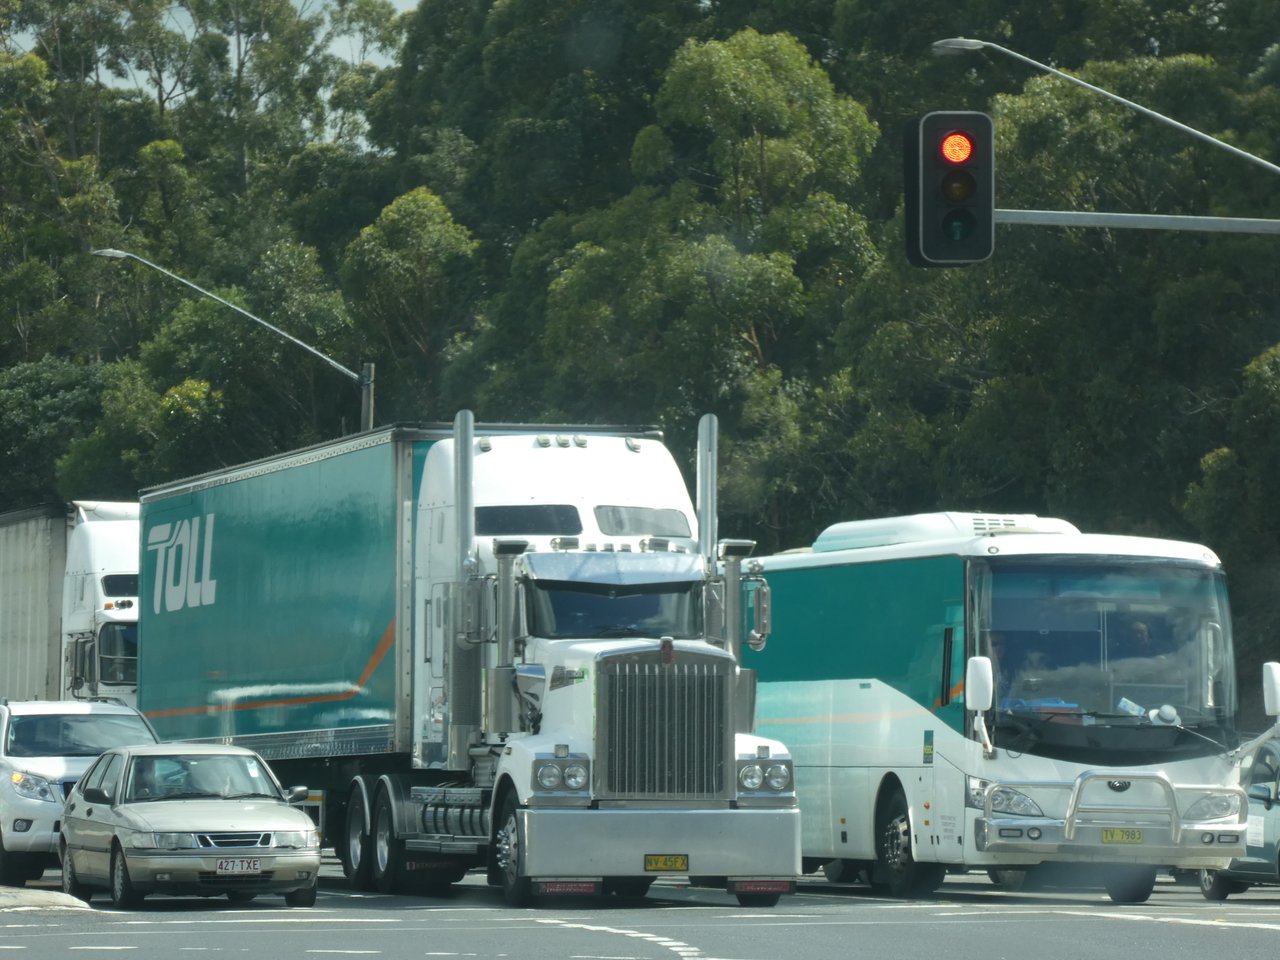 Z drogi- wielka ciężarówa ze zderzakiem na kangury i ptaki emu, podobnie jak autobus obok